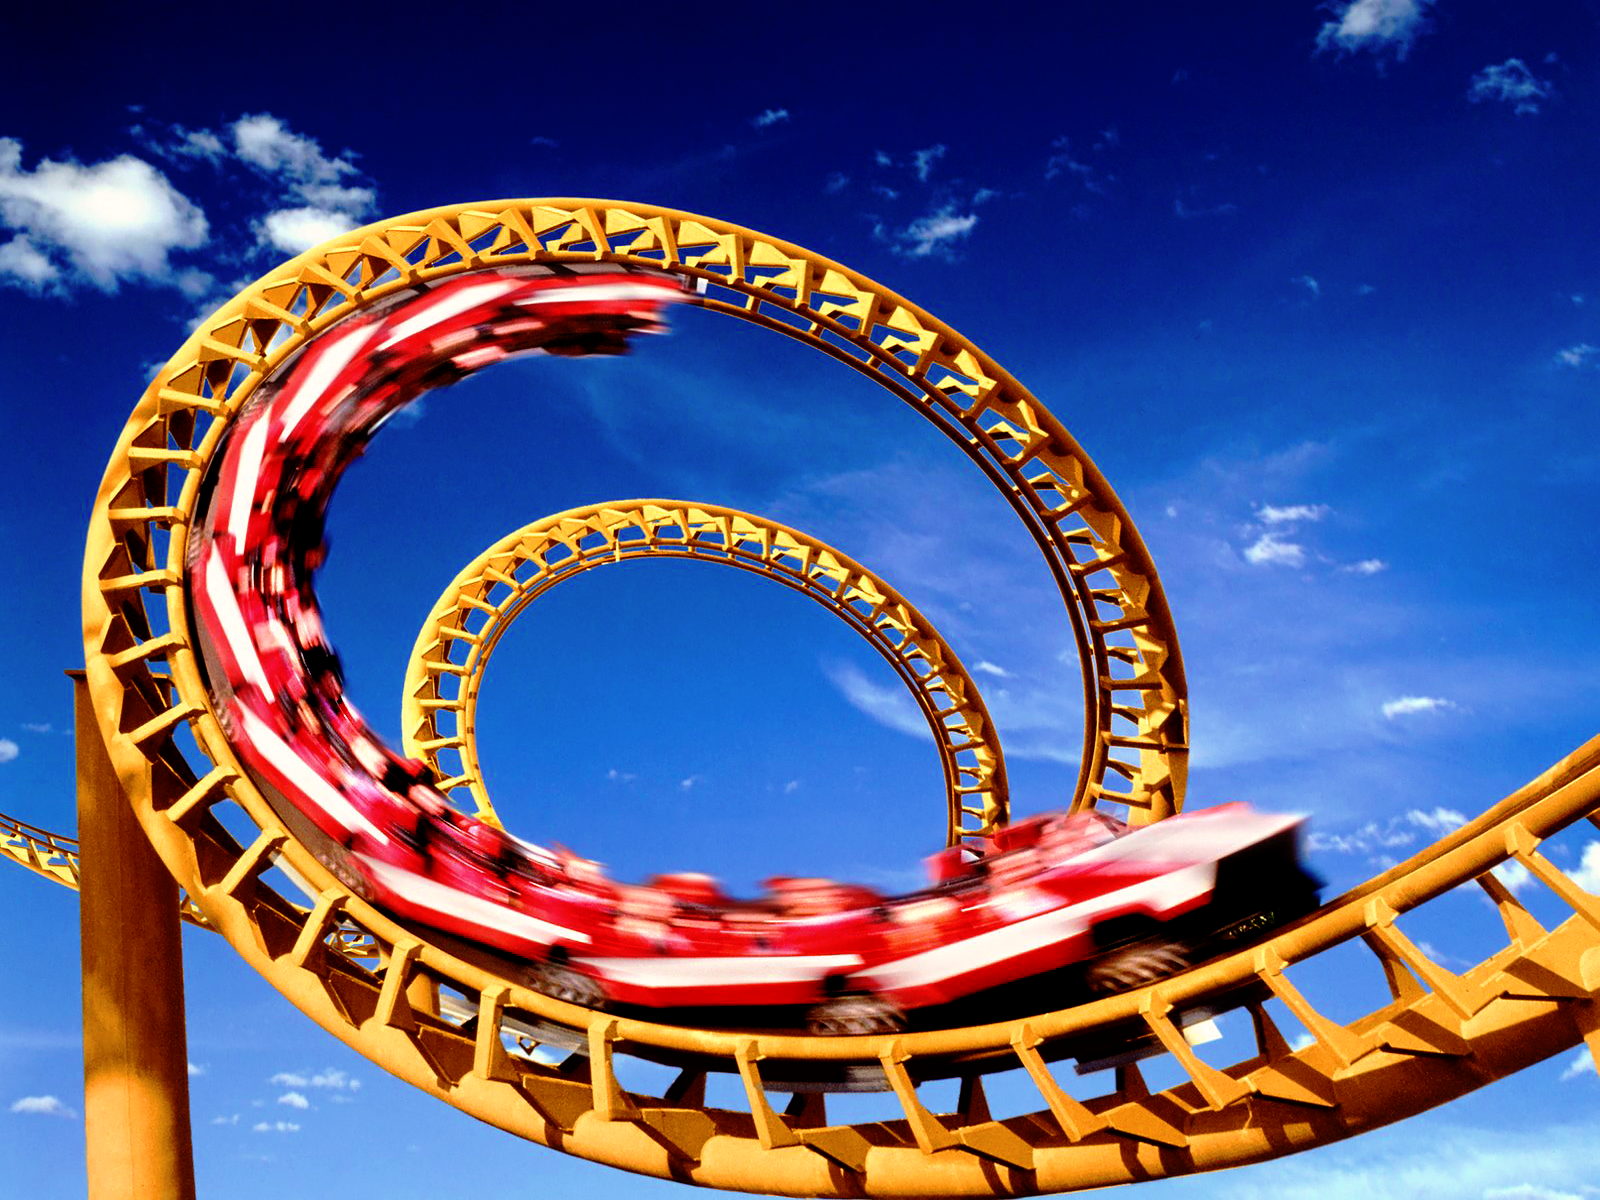 VR Thrills: Roller Coaster 36